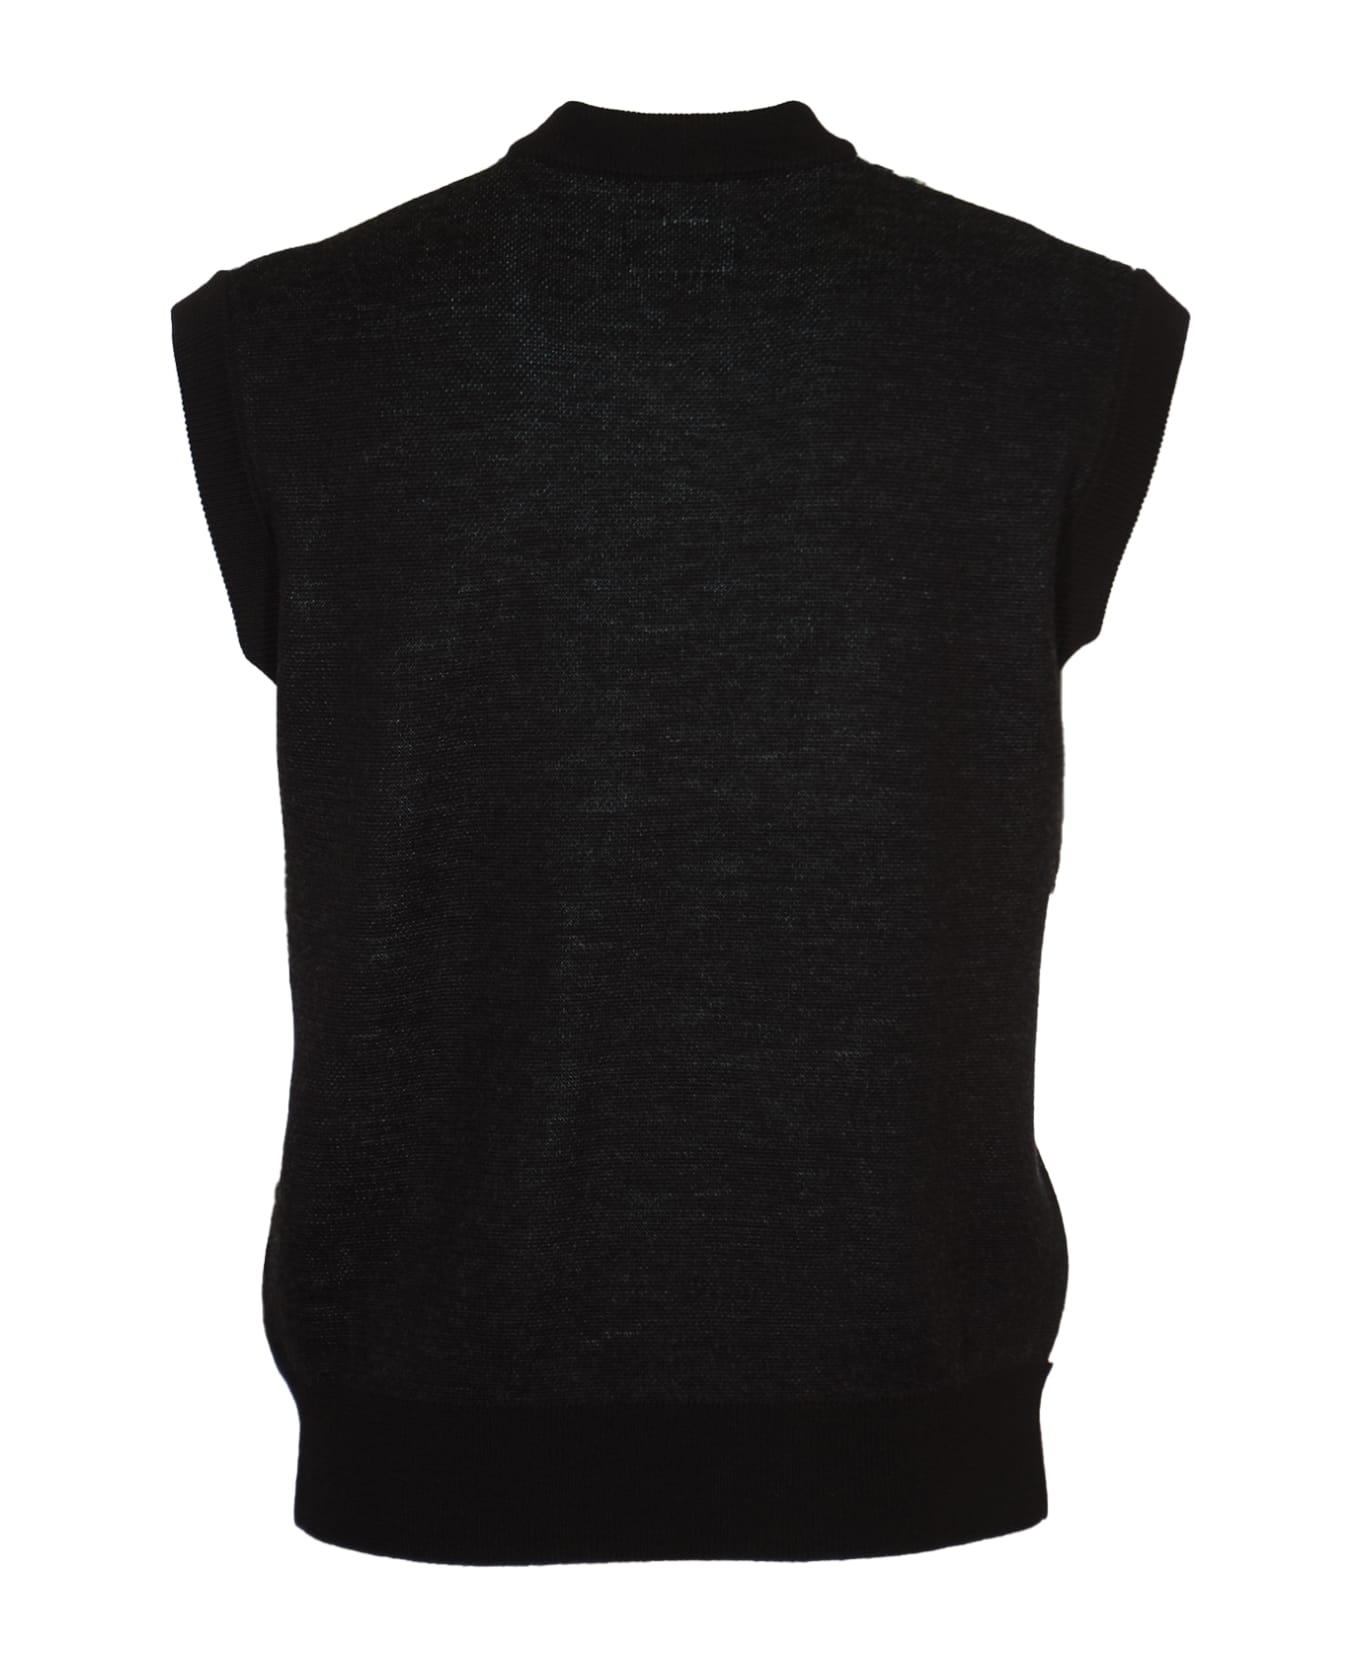 Rassvet V-neck Embroidered Sleeveless Top - Black